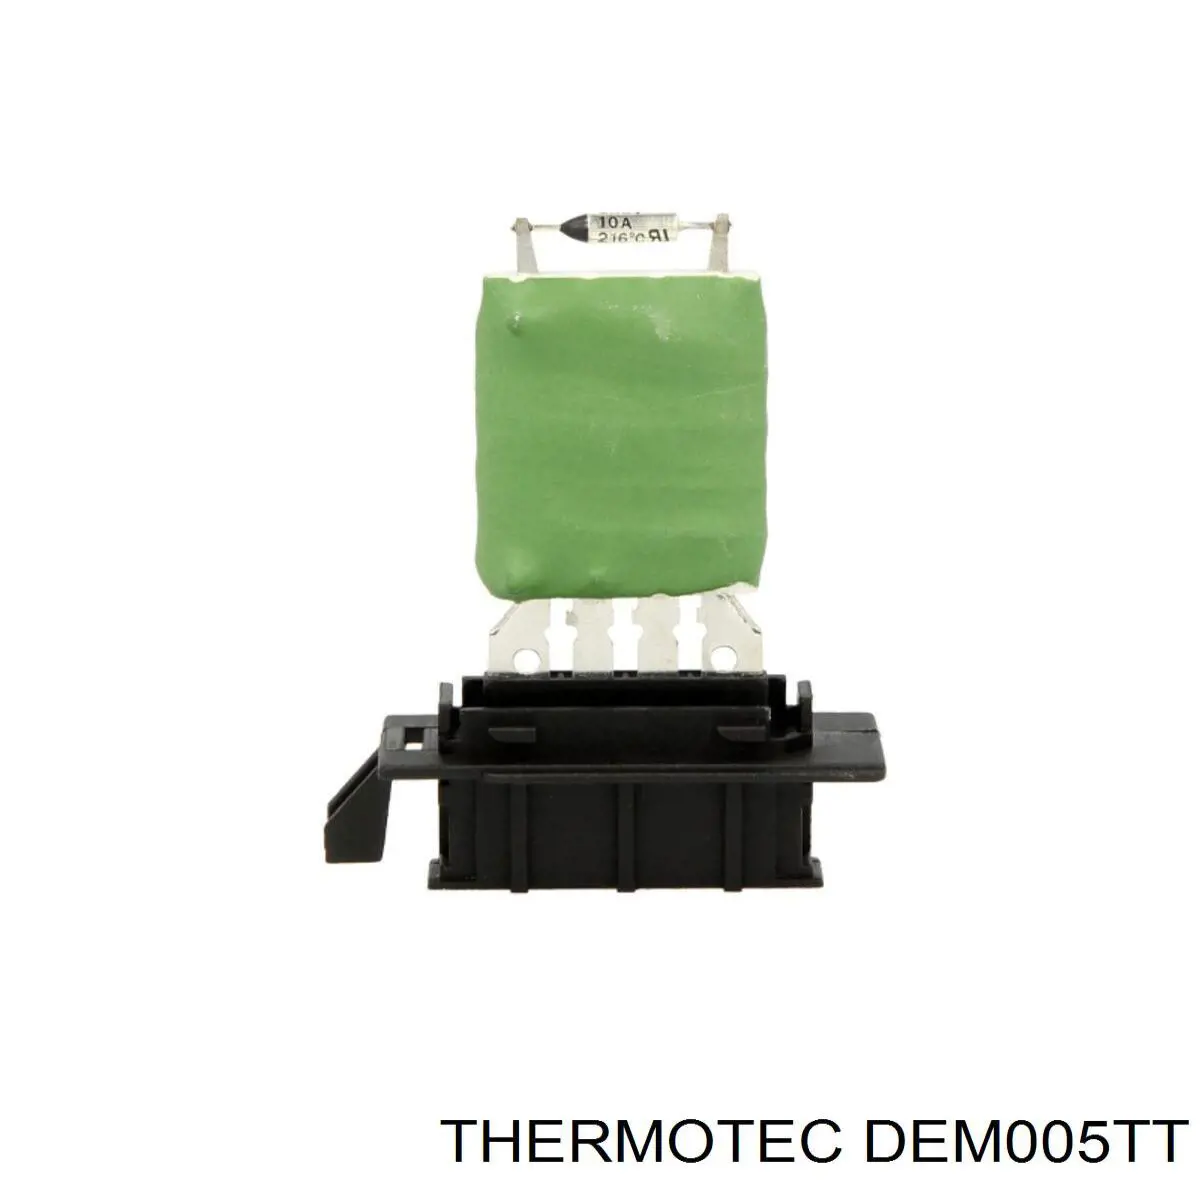 DEM005TT Thermotec resistencia de calefacción